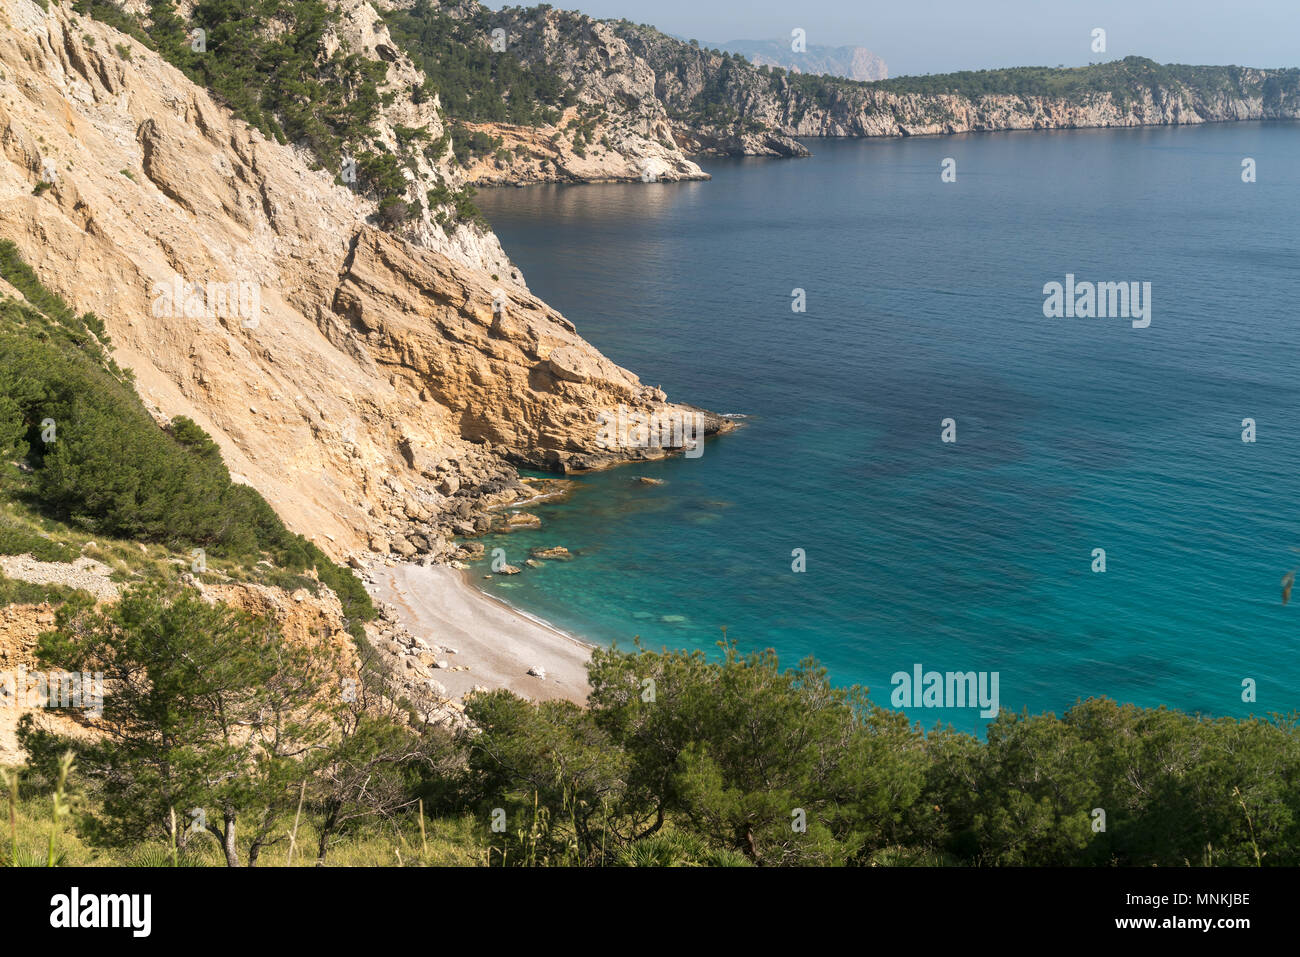 Victoria Halbinsel, Mallorca, Balearen, Spanien | Victoria península, Mallorca, Islas Baleares, España Foto de stock